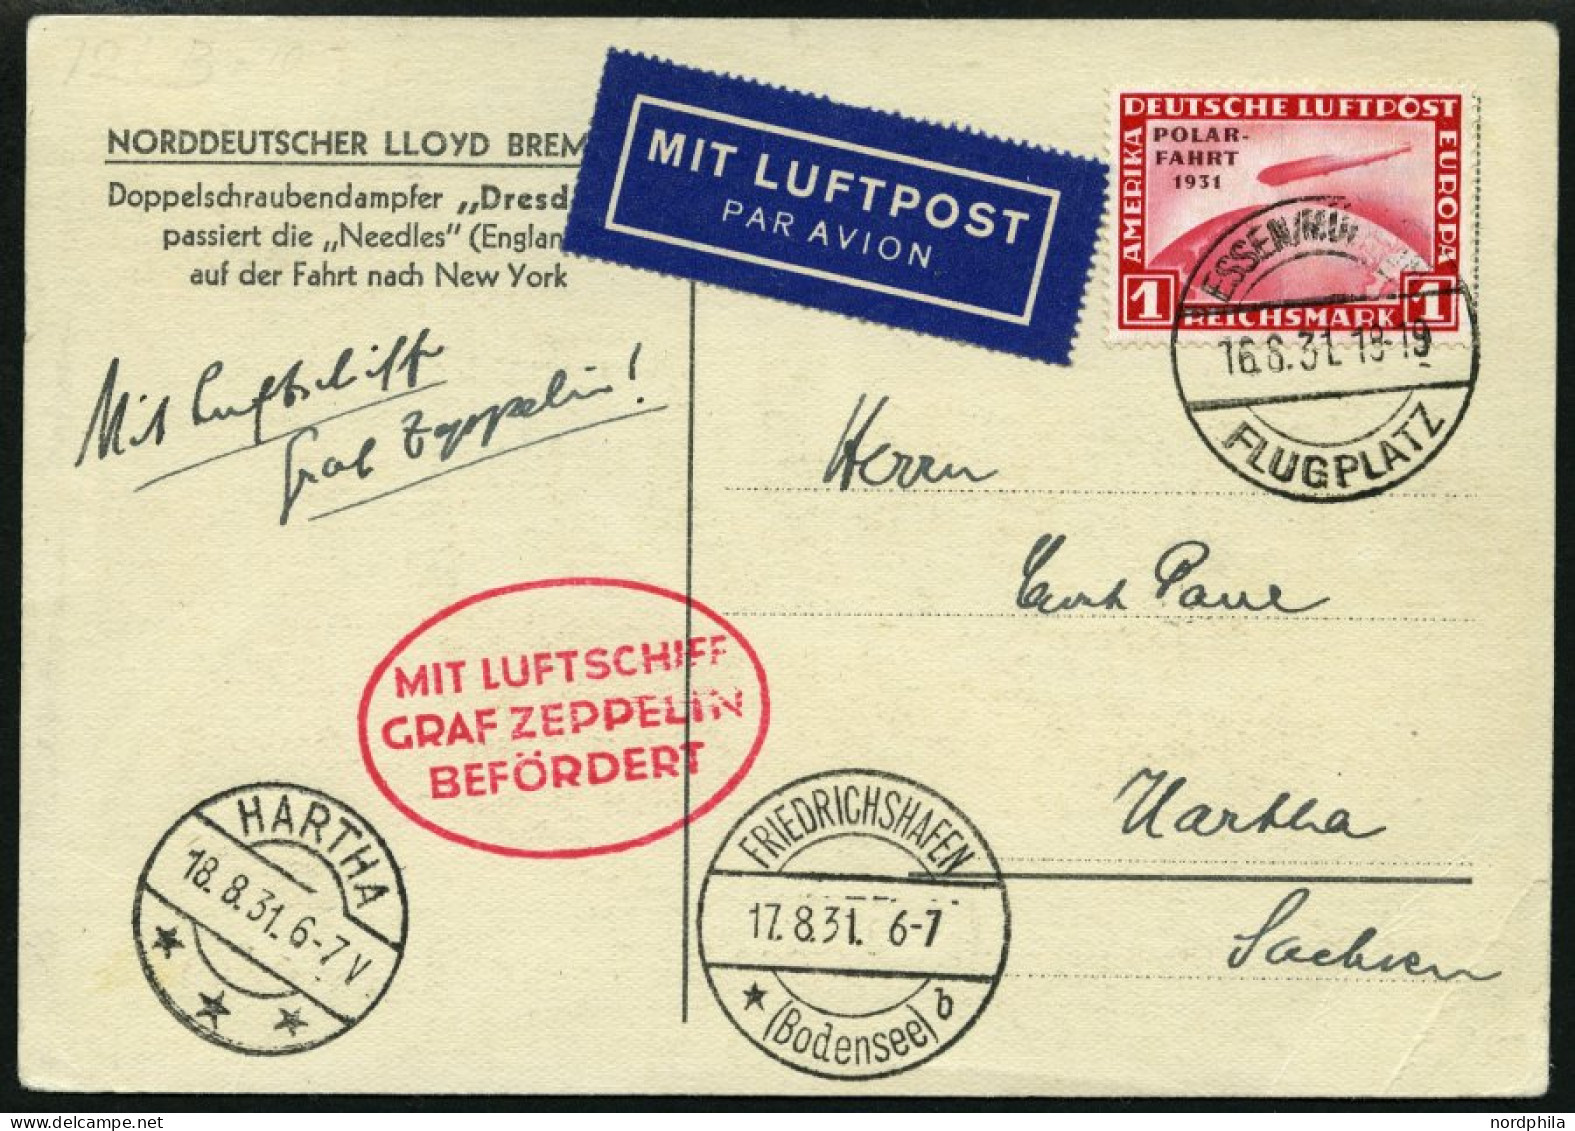 ZEPPELINPOST 121G BRIEF, 1931, Fahrt Essen-Friedrichshafen, Frankiert Mit 1 RM Polarfahrt, Karte Eckbug, Marke Pracht - Zeppelines